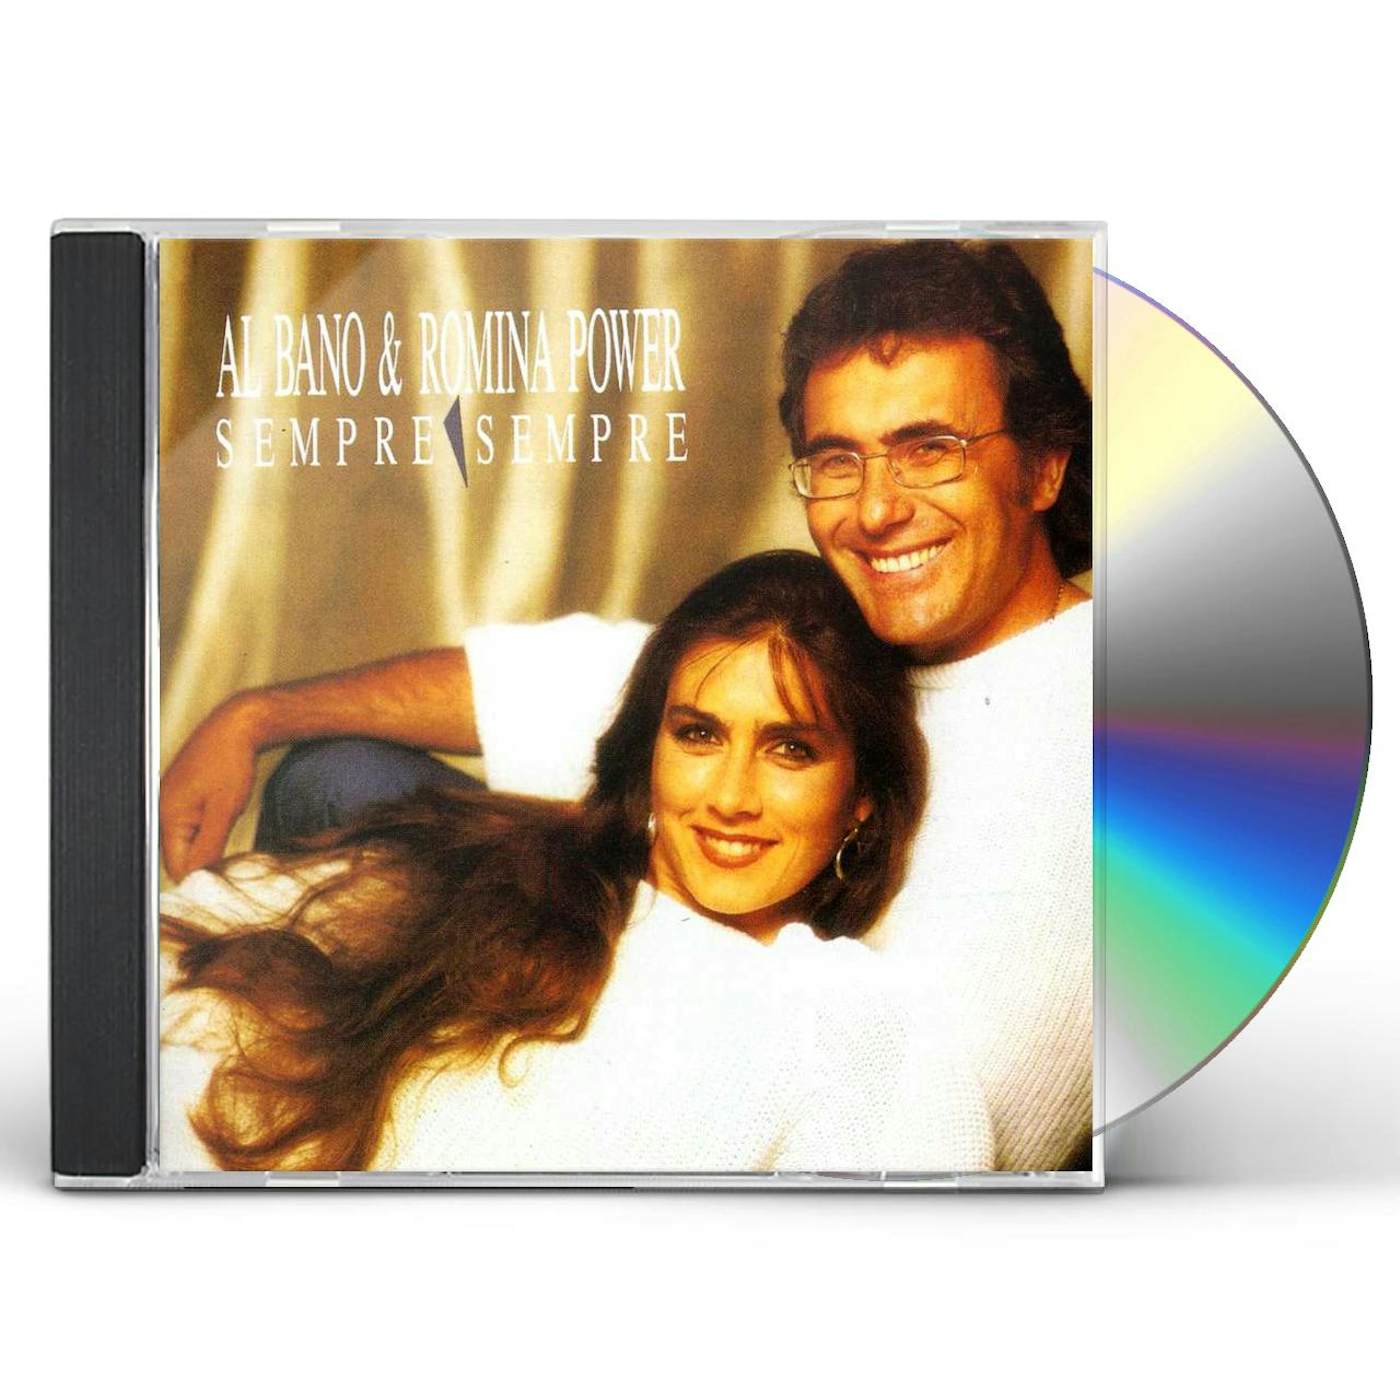 Al Bano And Romina Power SEMPRE SEMPRE CD